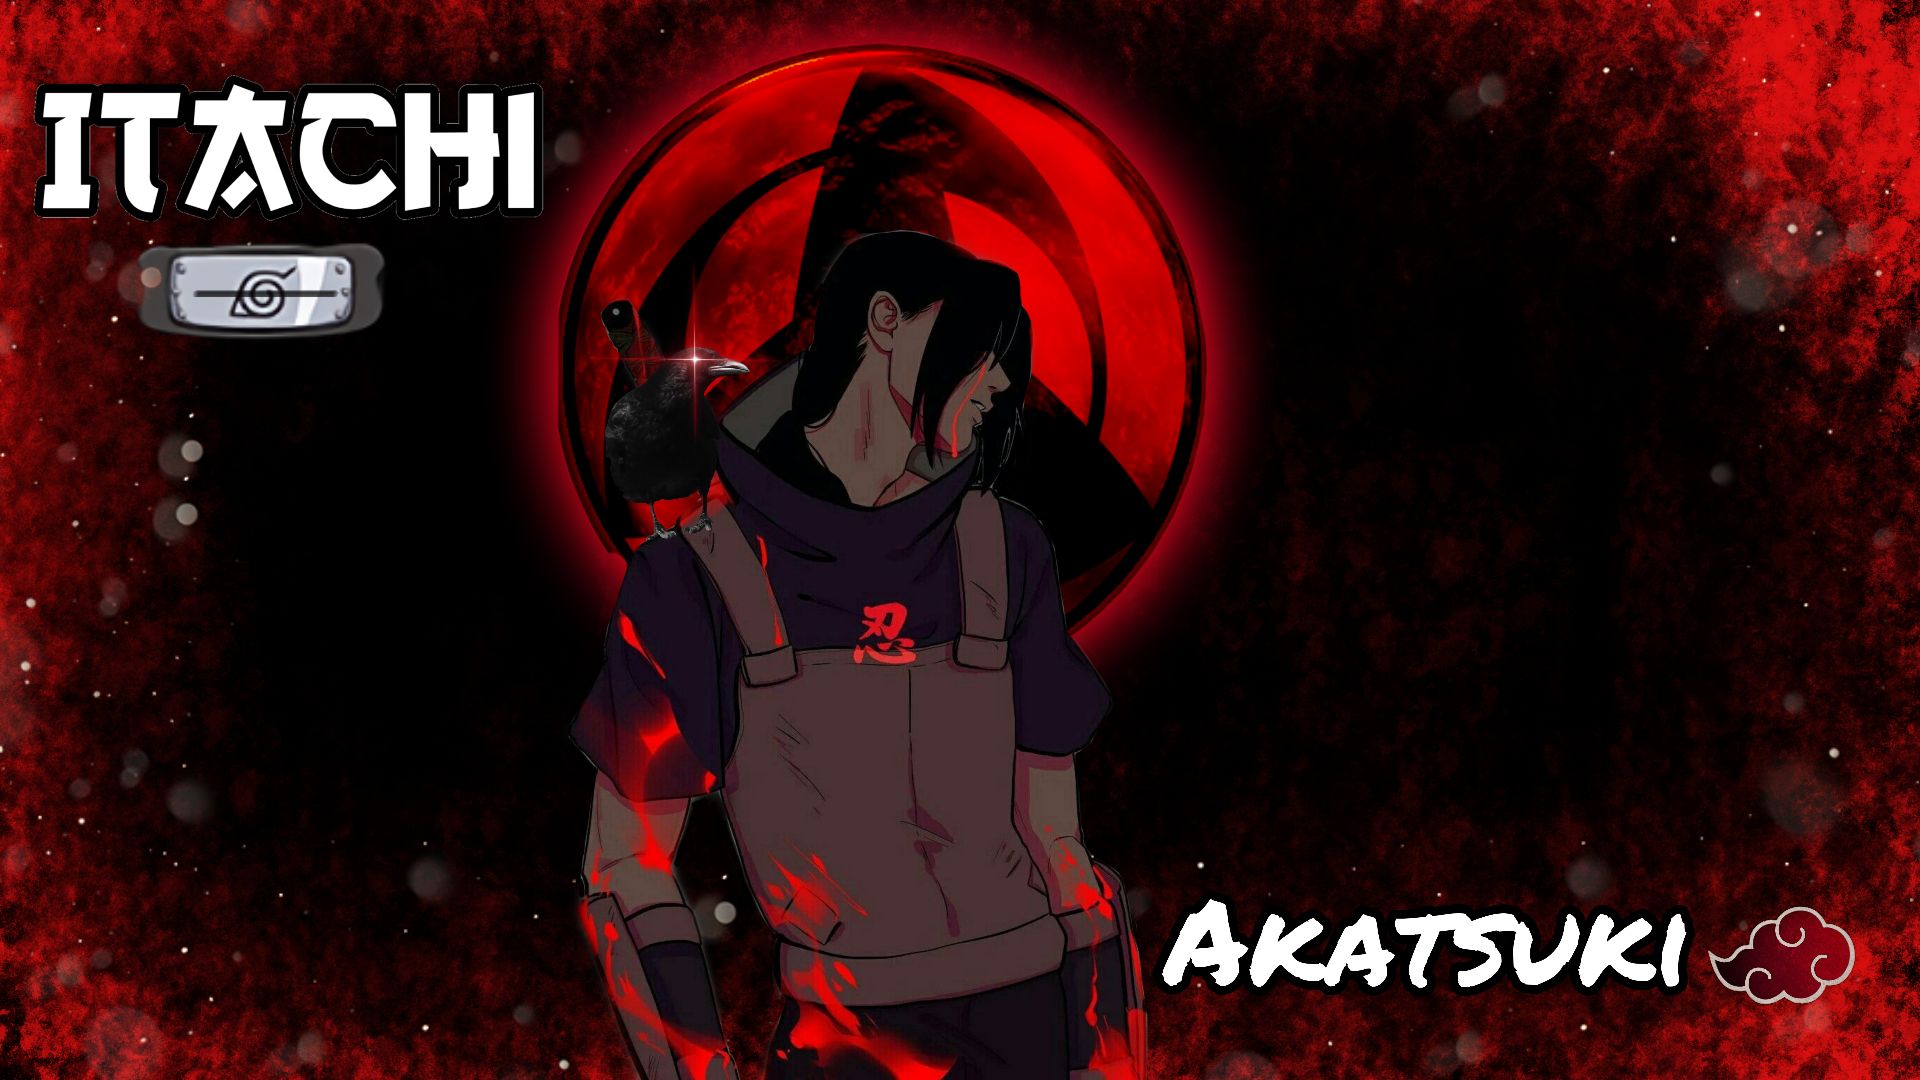 Fondos de pantalla de Akatsuki (Naruto) para escritorio, descarga gratis  imágenes y fondos de Akatsuki (Naruto) para PC 